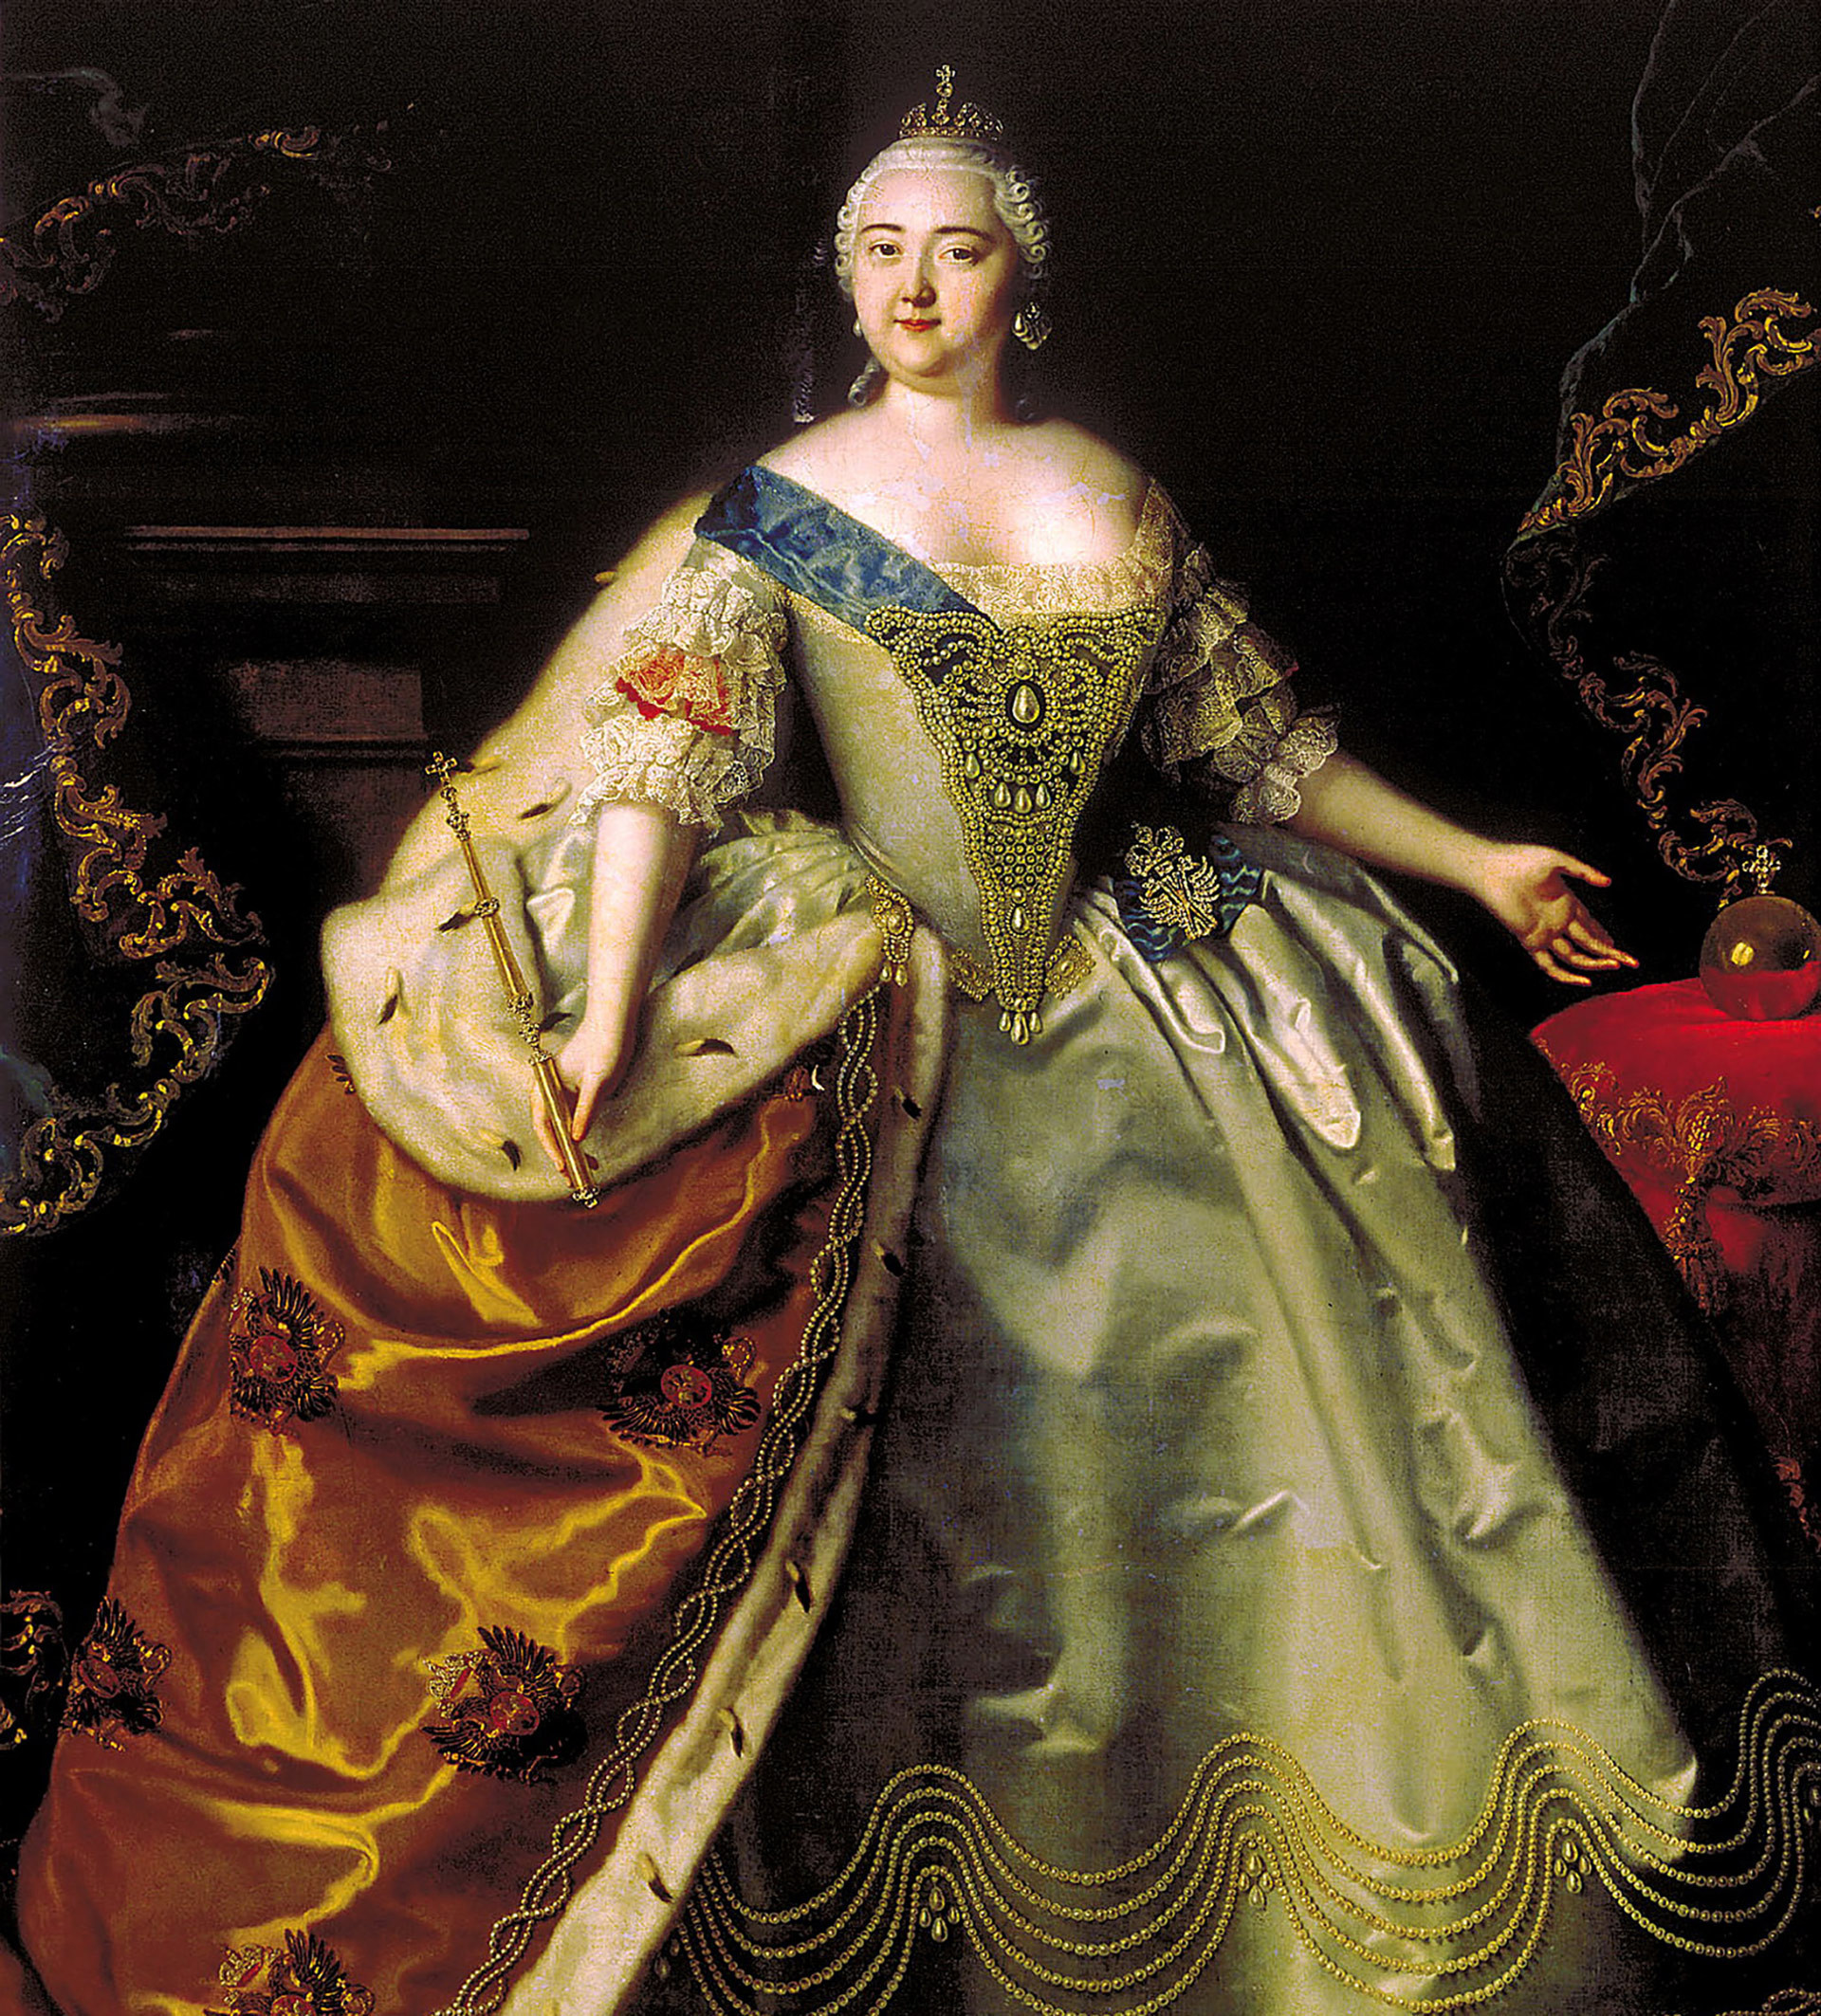 Retrato da imperatriz Isabel da Rússia por Louis Caravaque.